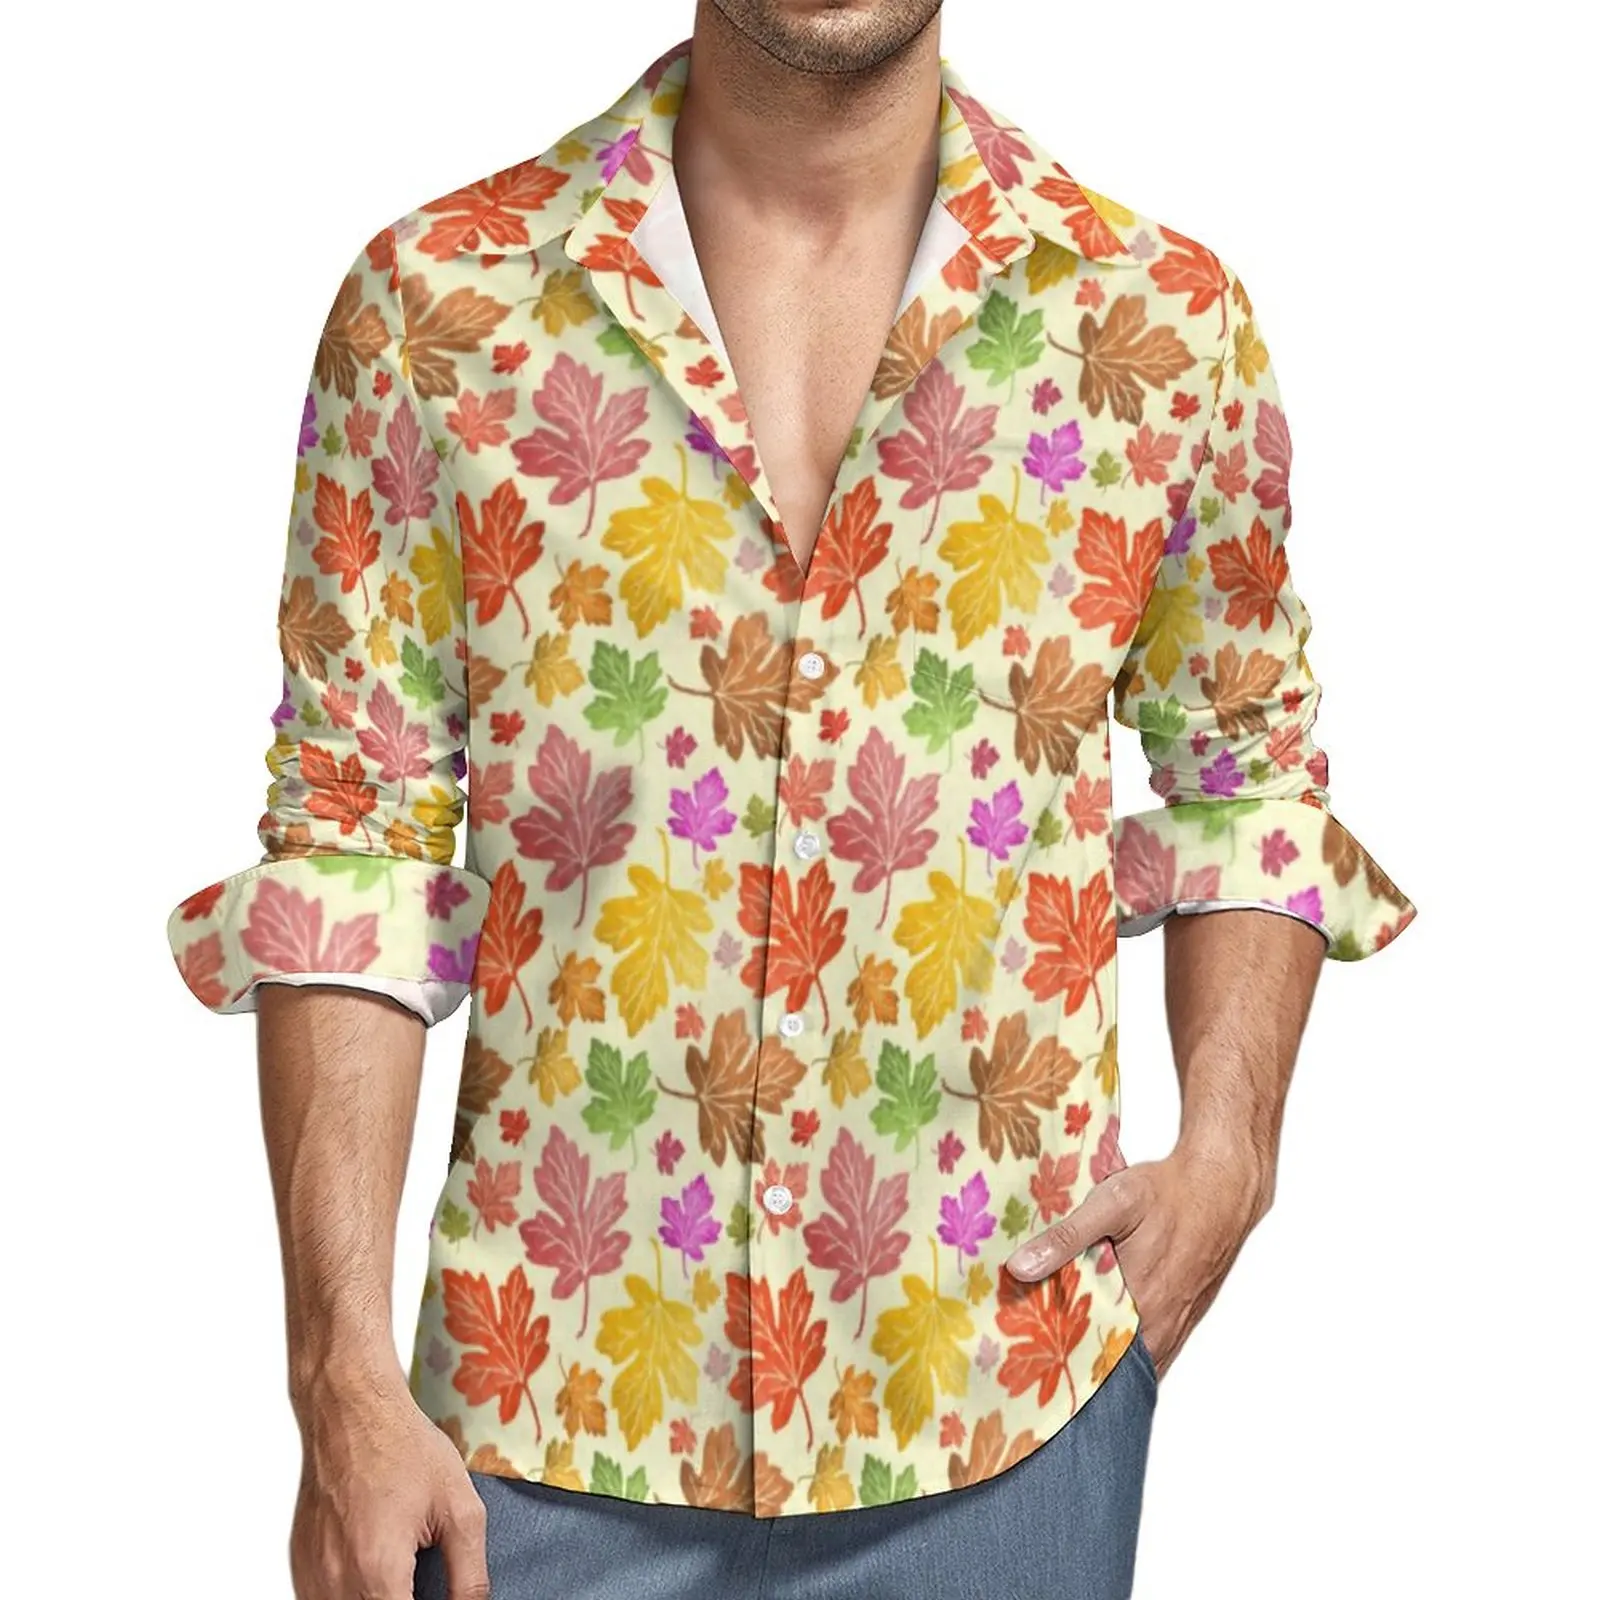 

Рубашка мужская с принтом листьев, Повседневная блузка свободного покроя с цветными кленовыми листьями, топ с графическим принтом и длинным рукавом, большие размеры, весна-осень